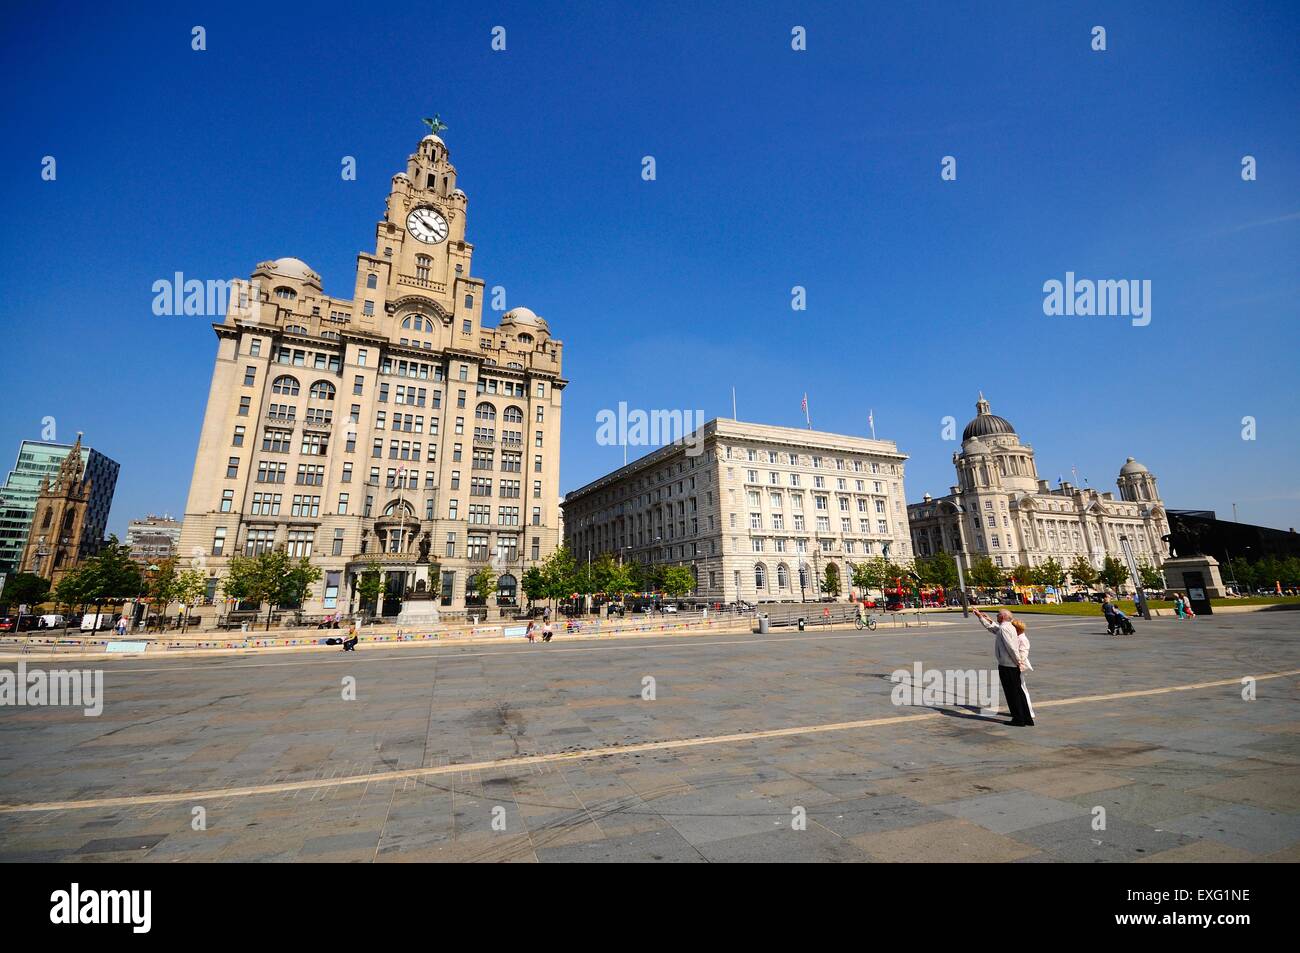 Les trois grâces composé du Liver Building, Port of Liverpool Building et la Cunard Building, Liverpool, Angleterre, Royaume-Uni. Banque D'Images